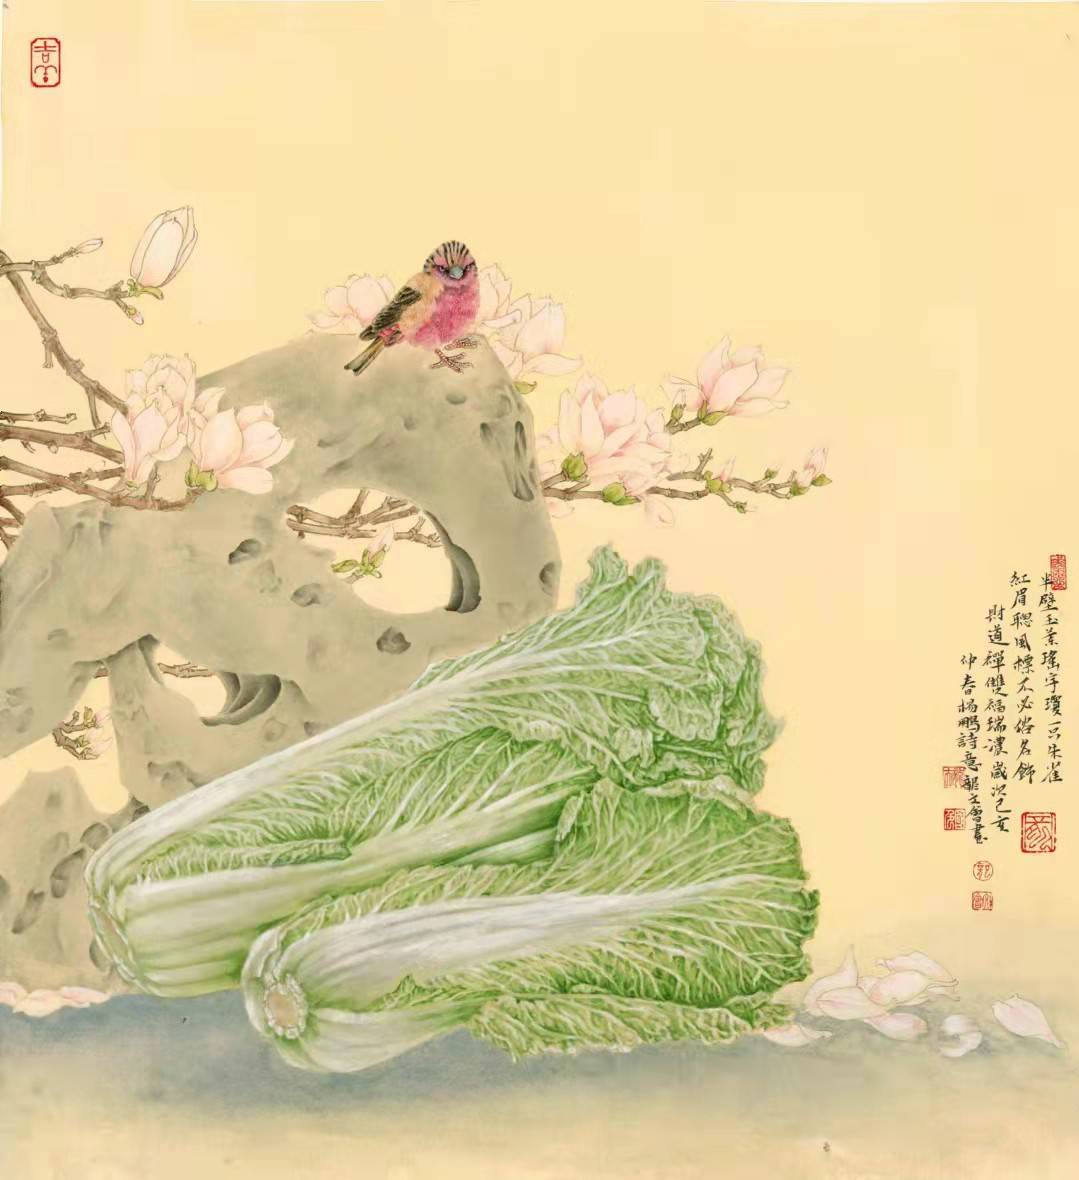 中国画白菜画第一人龙文会百财系列微展